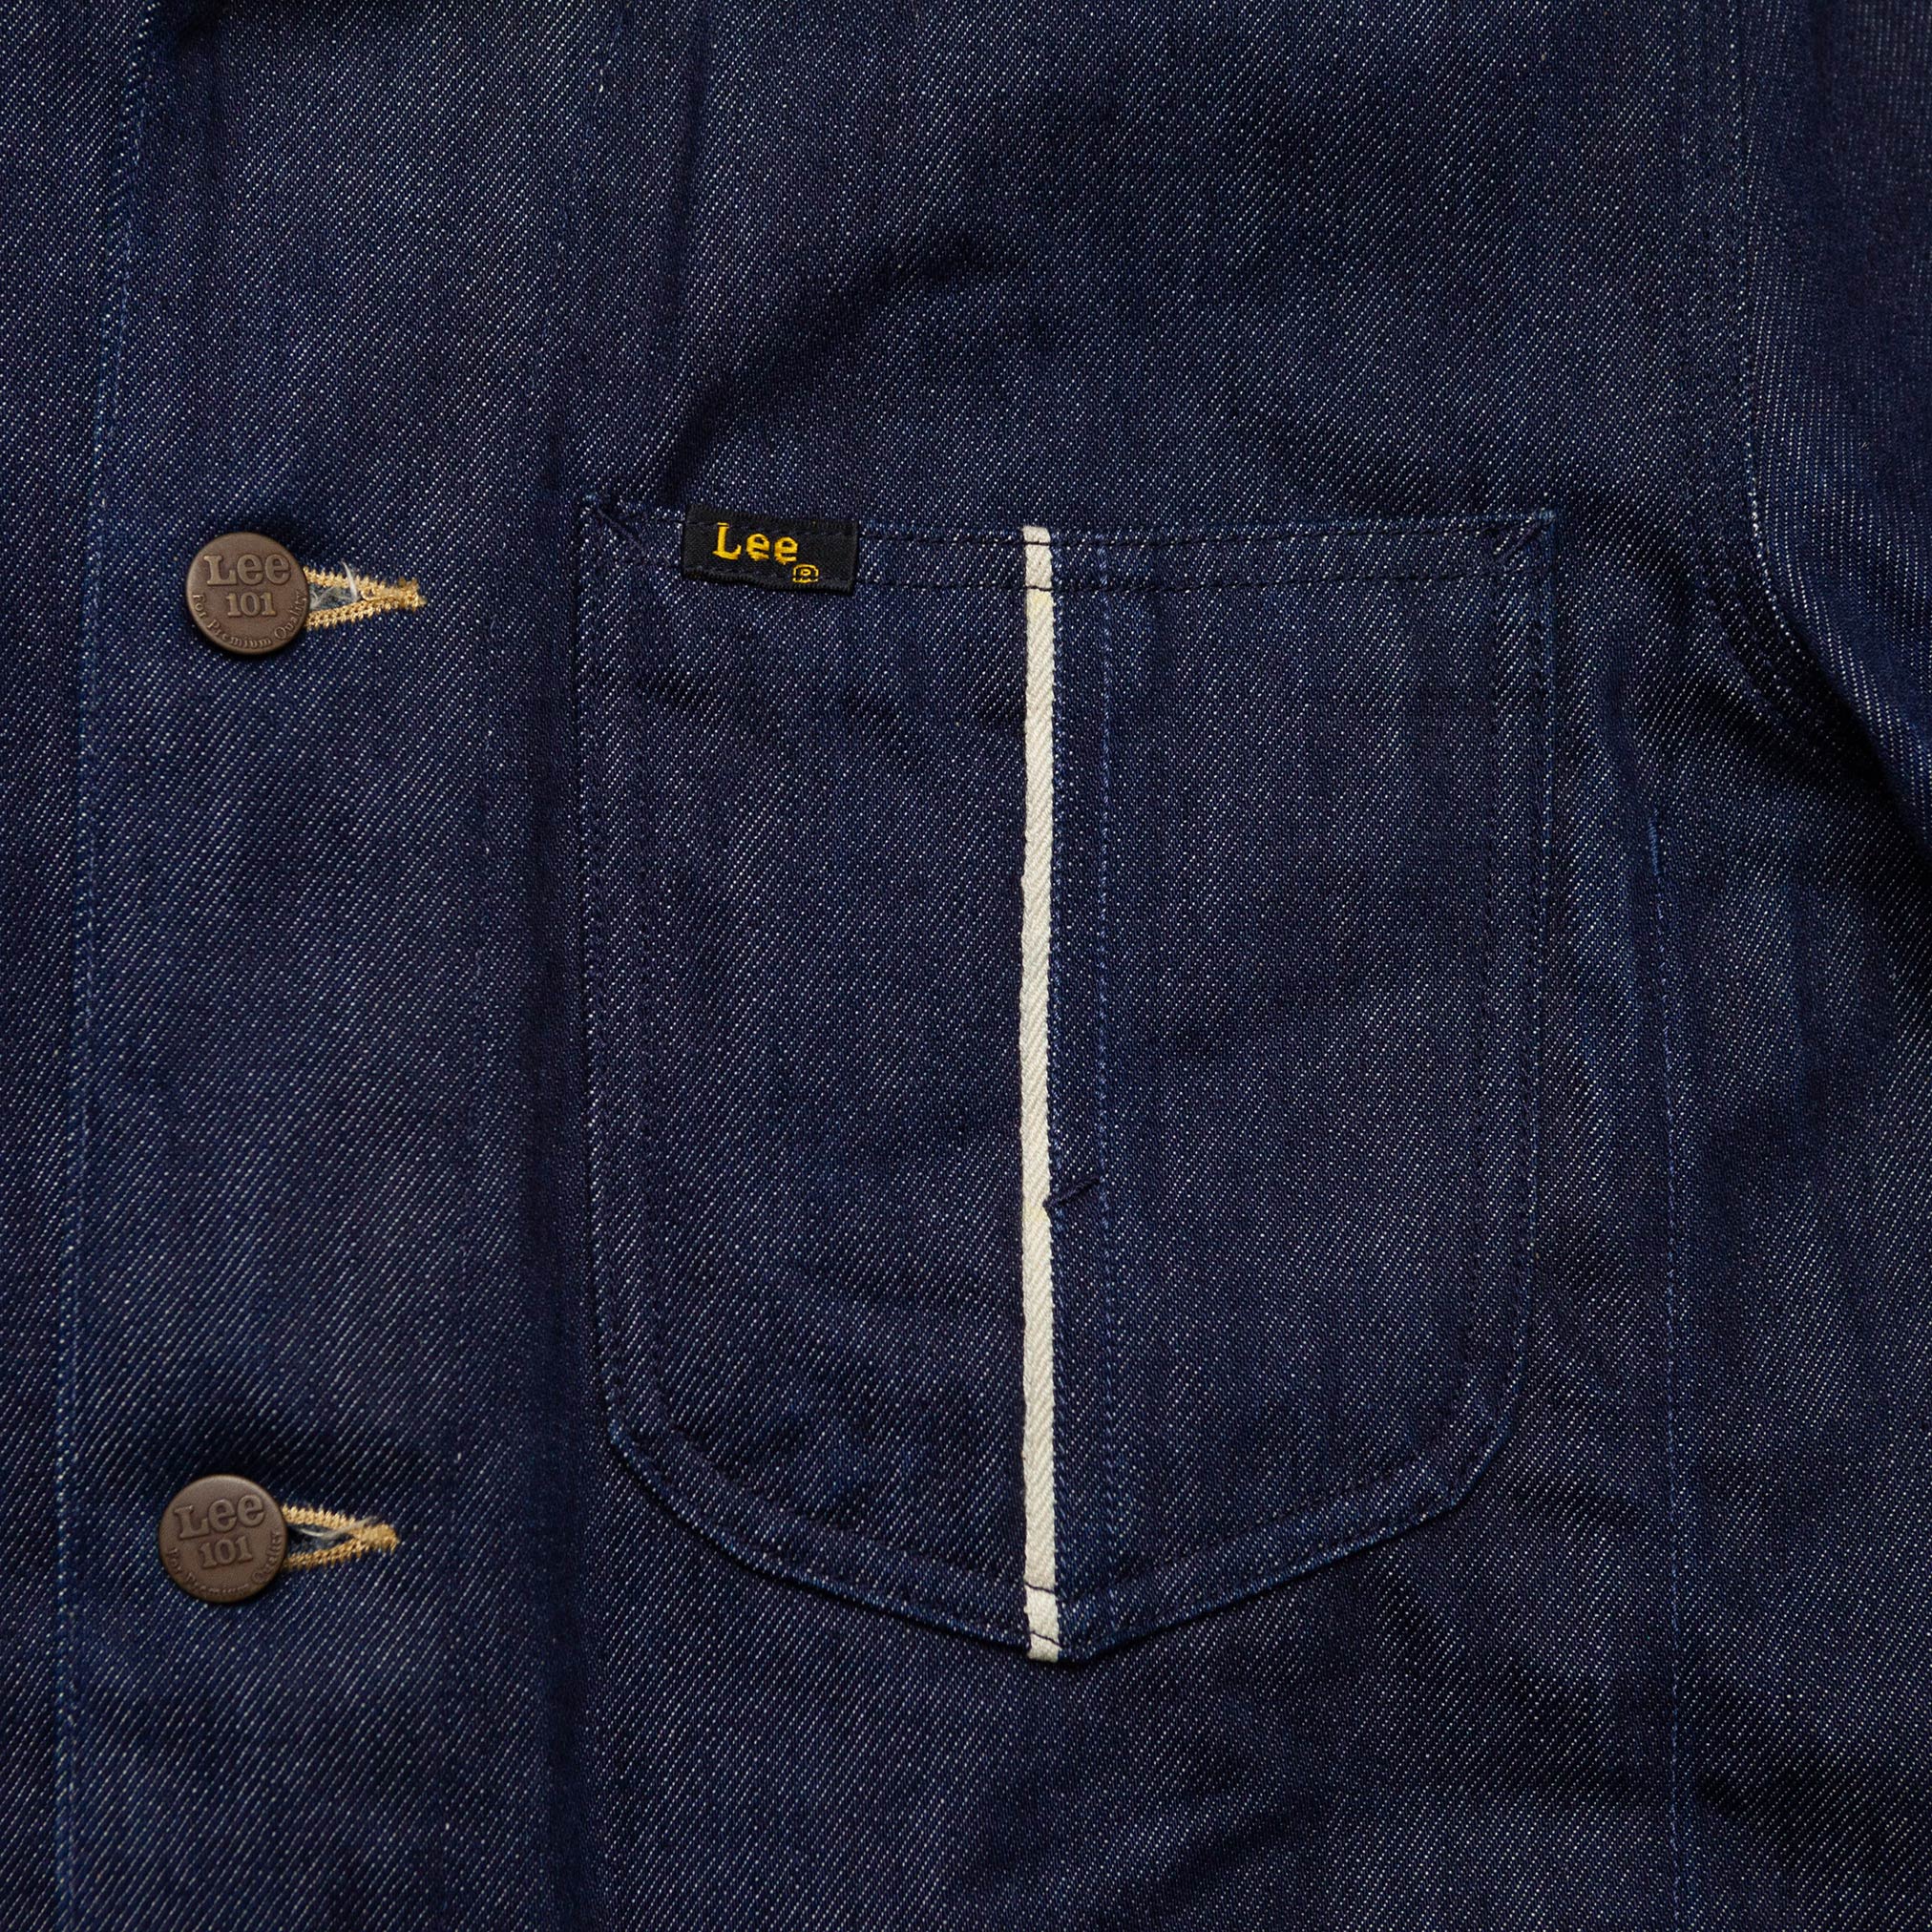 Lined Slevedge Chore Jacket